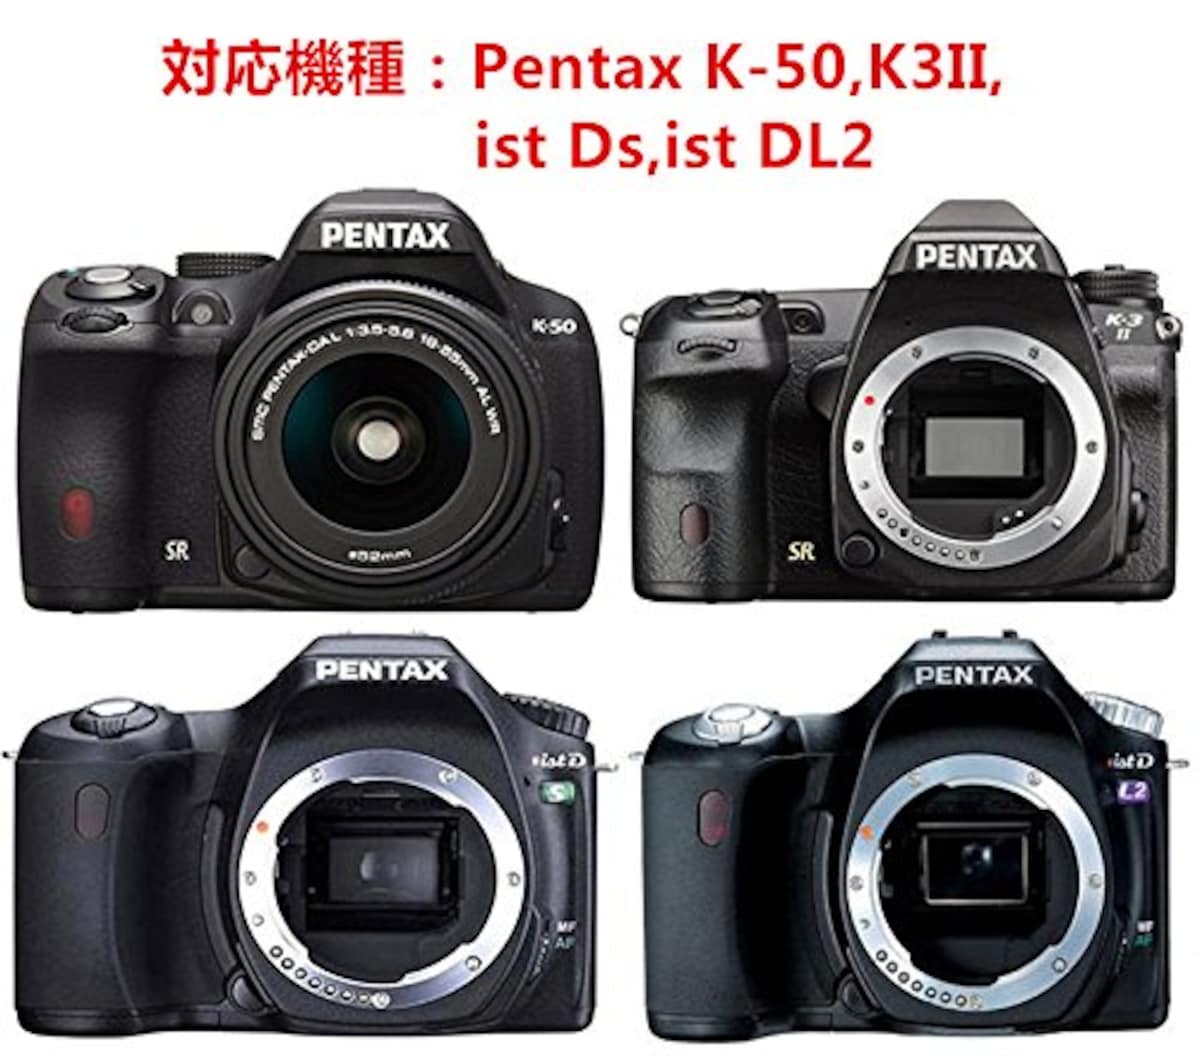  和湘堂 Pentax K-50,K-3II,ist Ds,ist DL2用 一眼レフカメラバッグ 帆布生地 ロングレンズ収納可 軽量 丈夫 お洒落! カメラマンにお薦め! 「517-0017-01I」画像7 